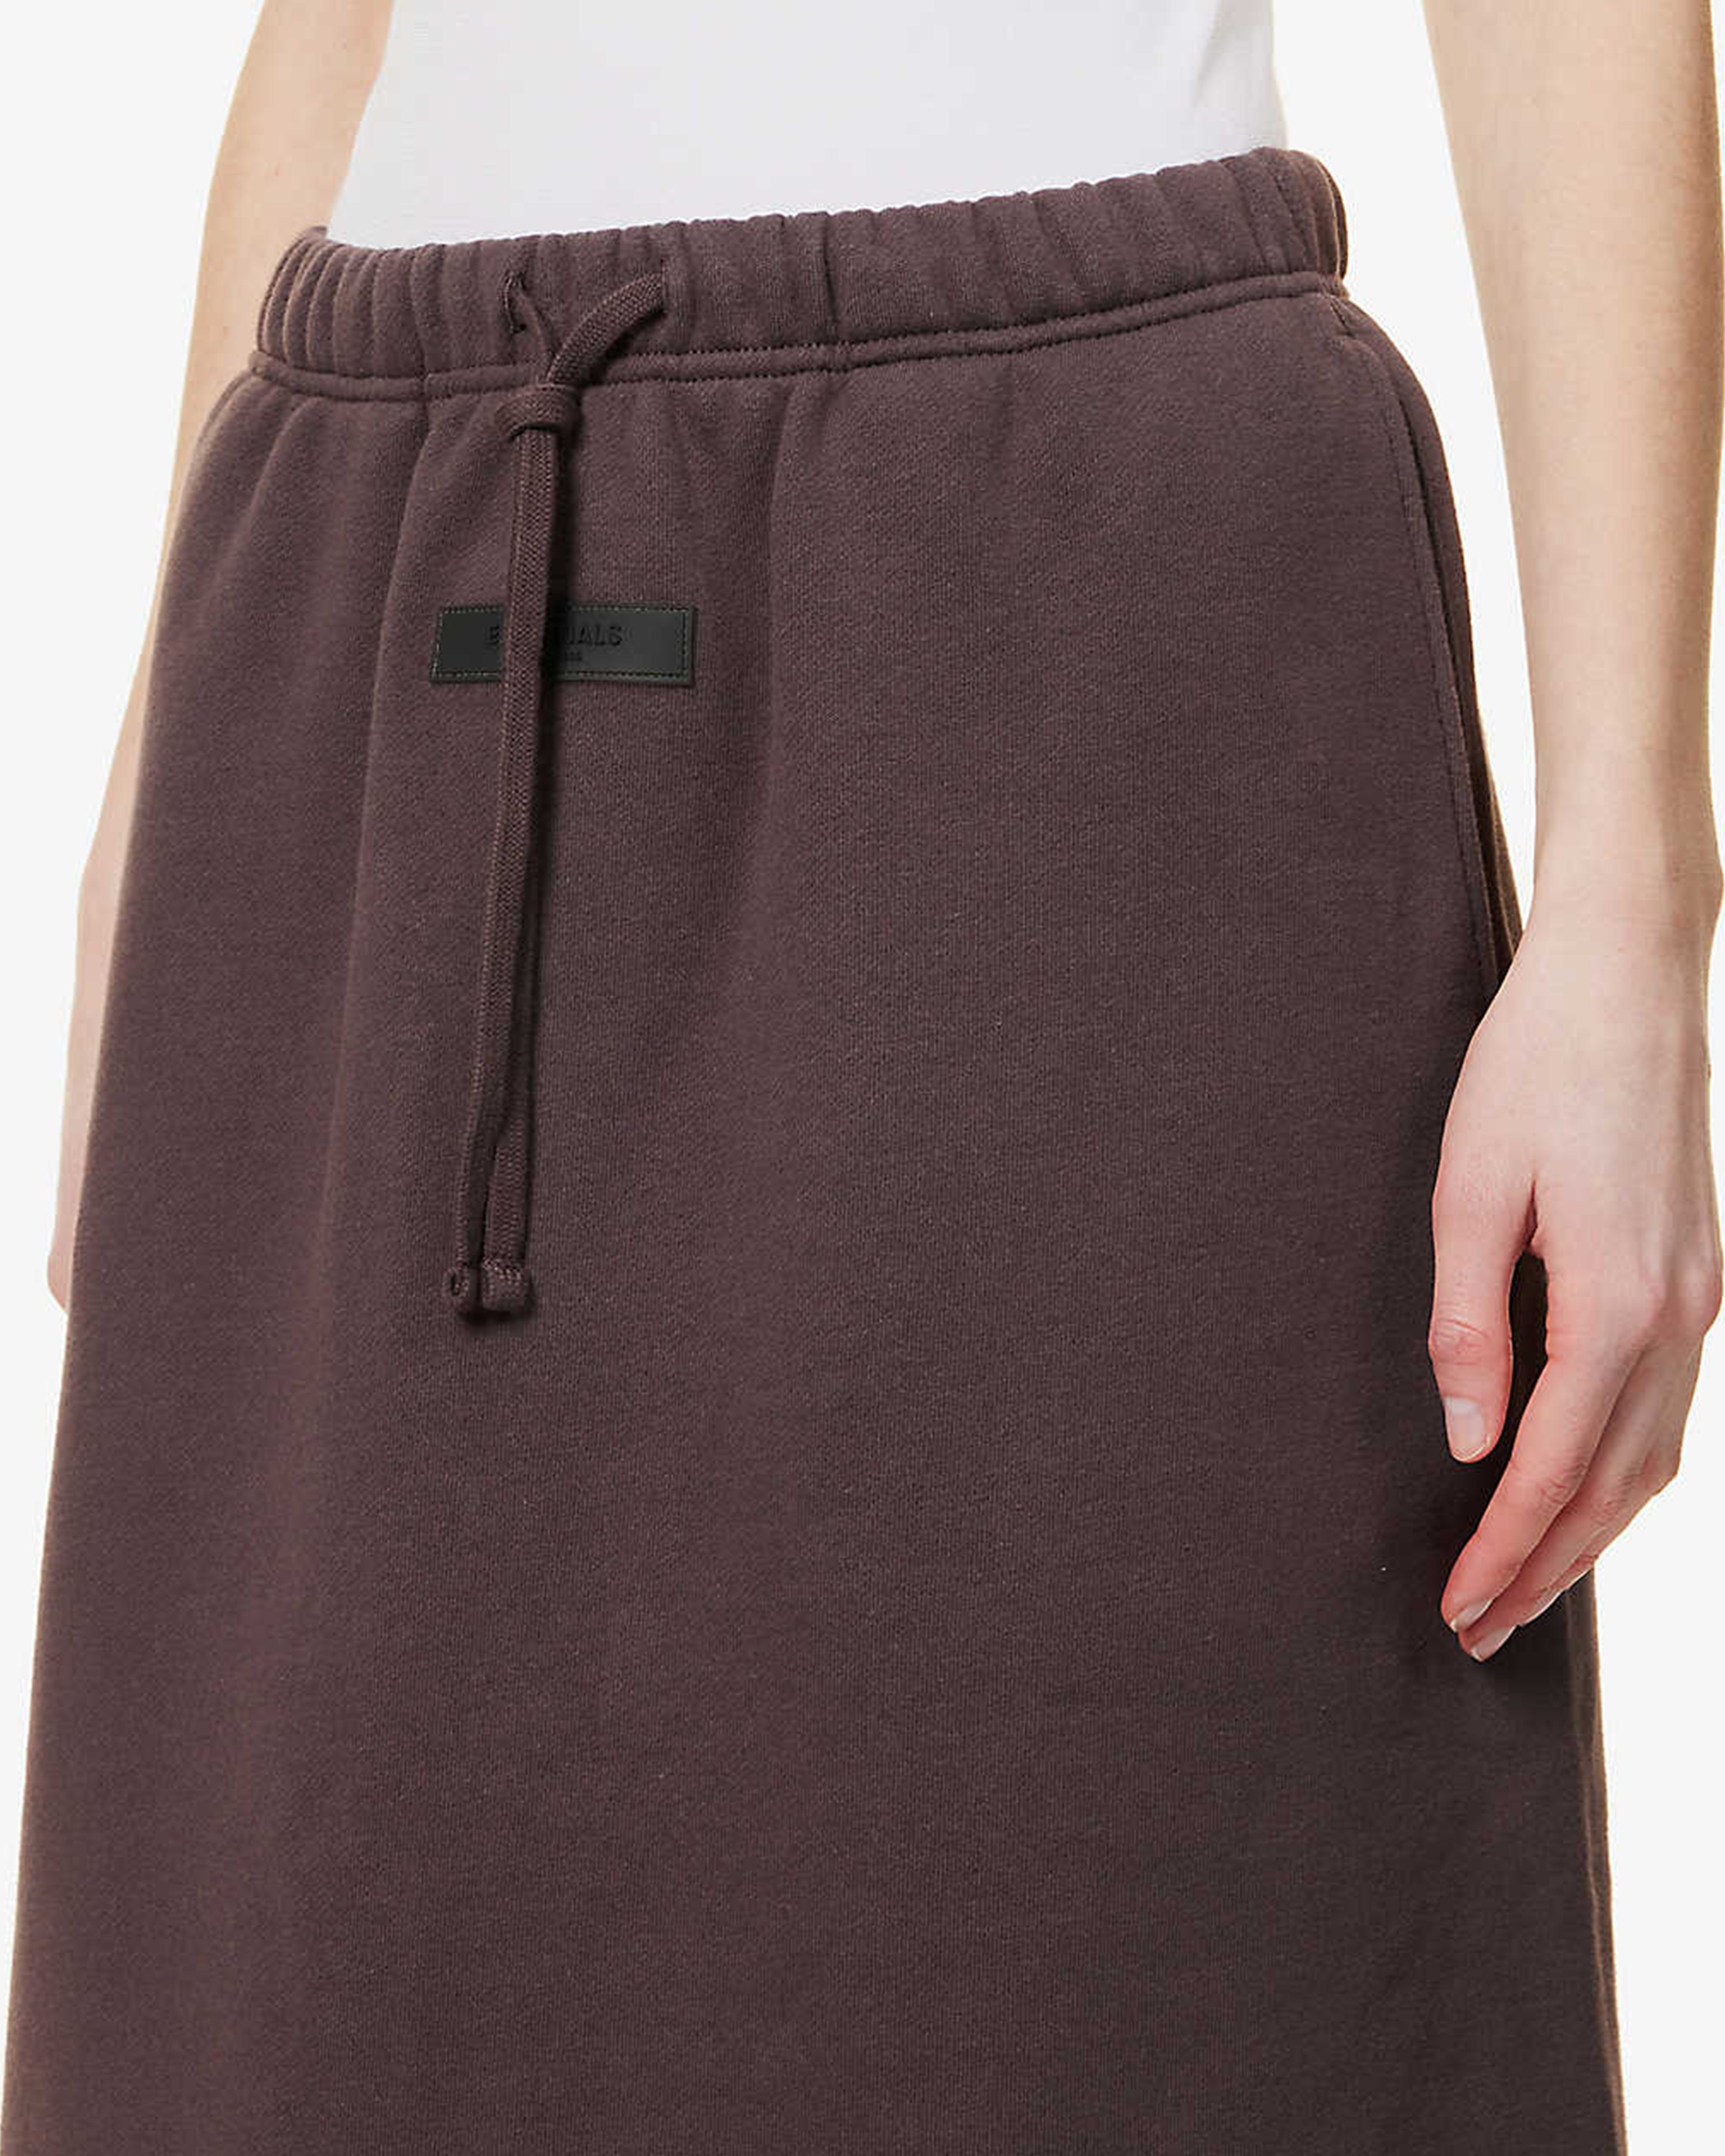 Essentials Short Skirt - Plum